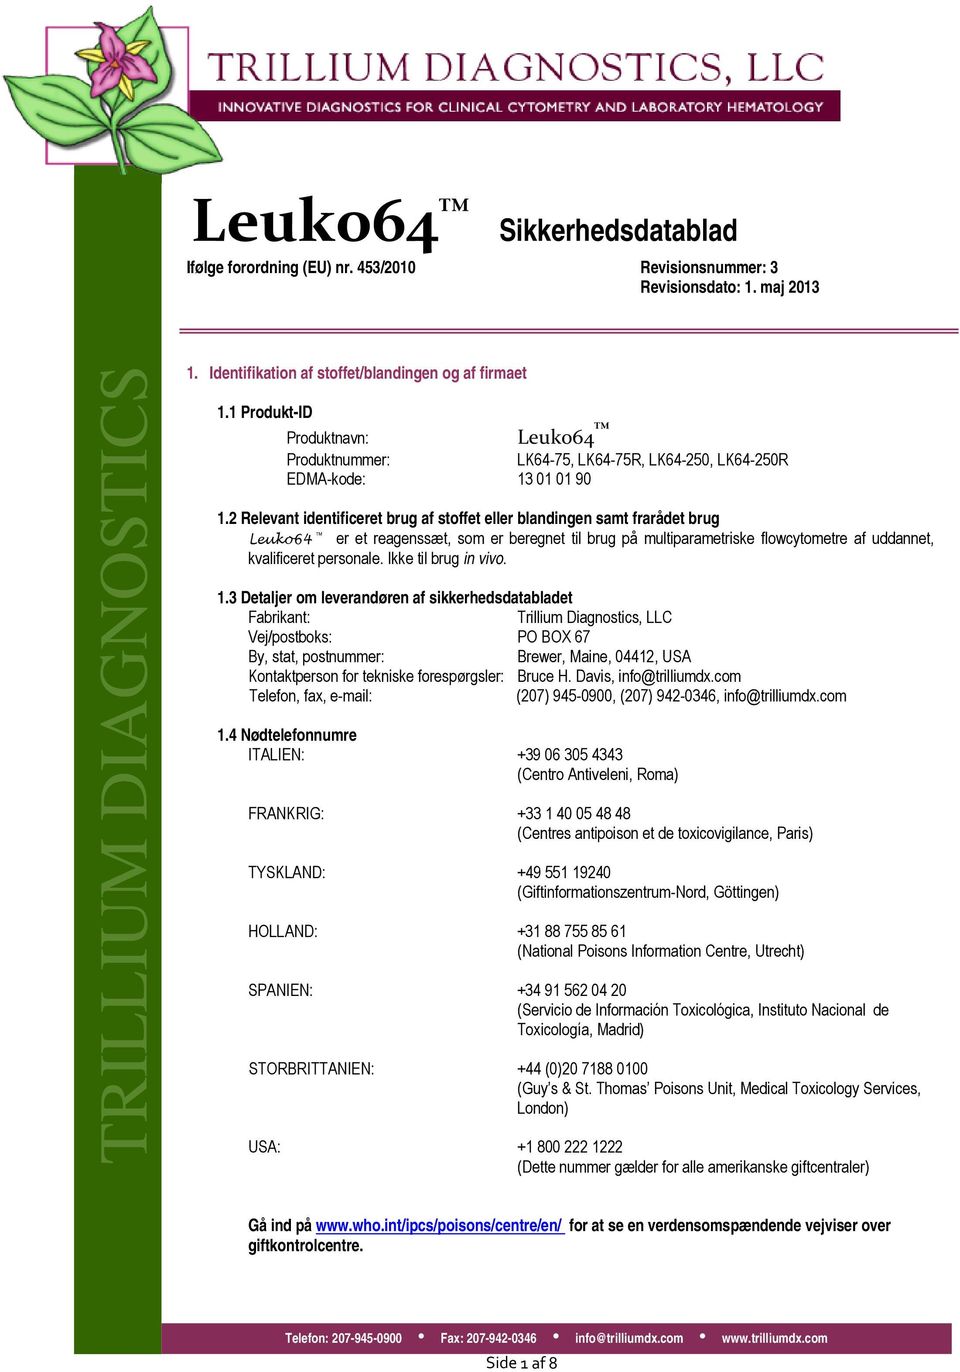 2 Relevant identificeret brug af stoffet eller blandingen samt frarådet brug Leuko64 er et reagenssæt, som er beregnet til brug på multiparametriske flowcytometre af uddannet, kvalificeret personale.